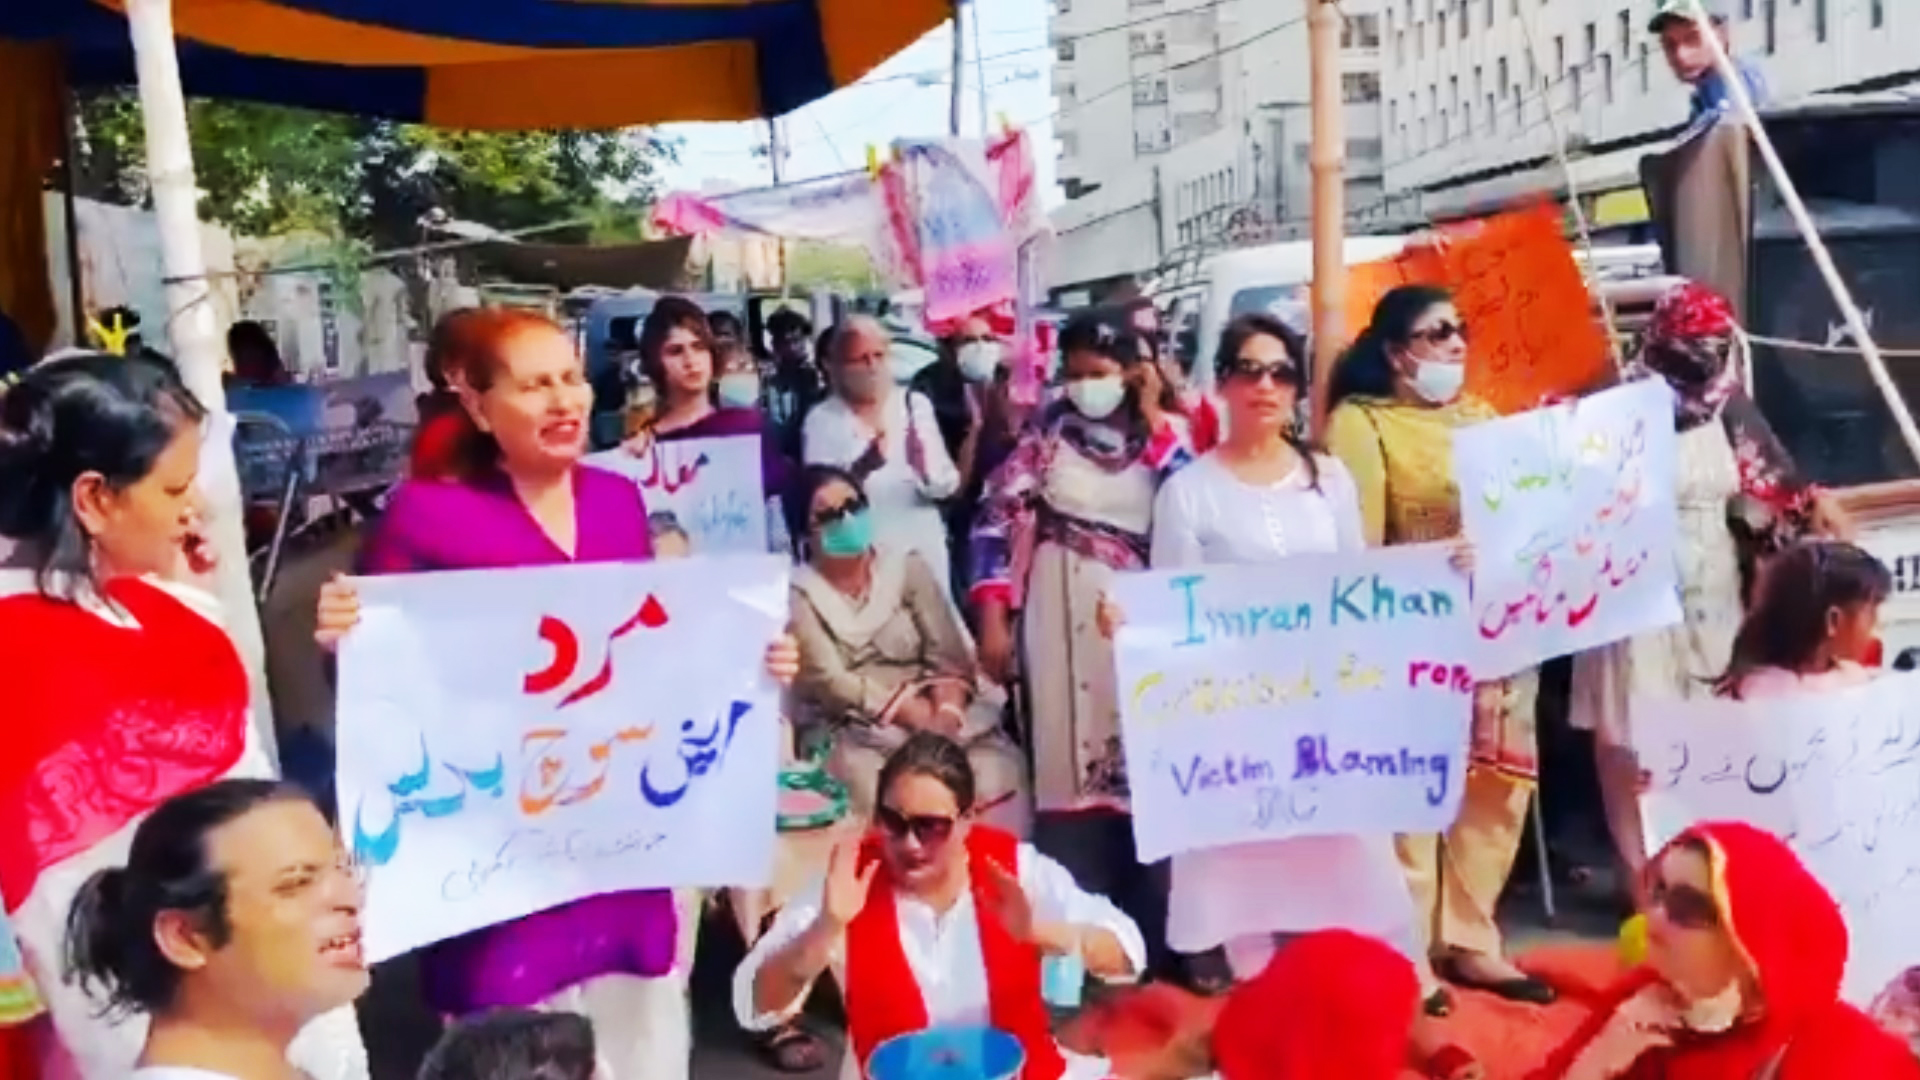 파키스탄 인권단체 회원들이 카라치 시내에서 집회를 갖고 성폭력이 증가하는 원인을 여성들의 노출 의상 때문이라고 말한 임란 칸 파키스탄 총리에게 사과를 요구하고 있다. 트위터 동영상 캡처